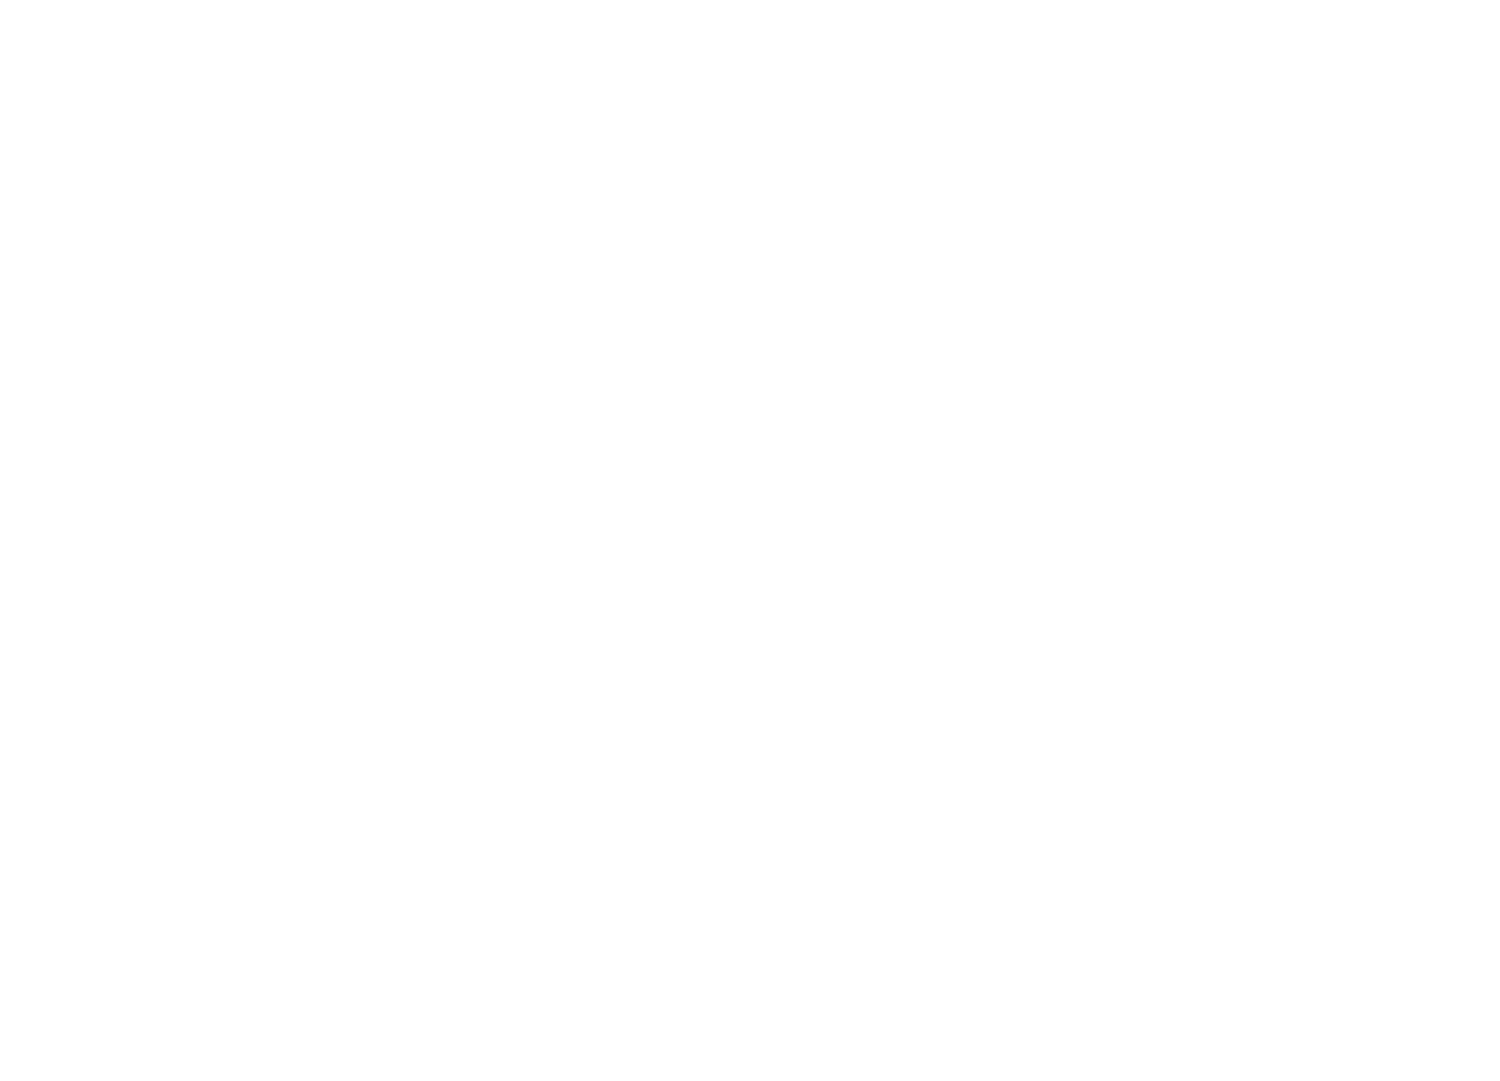 McKee’s Custom Creations